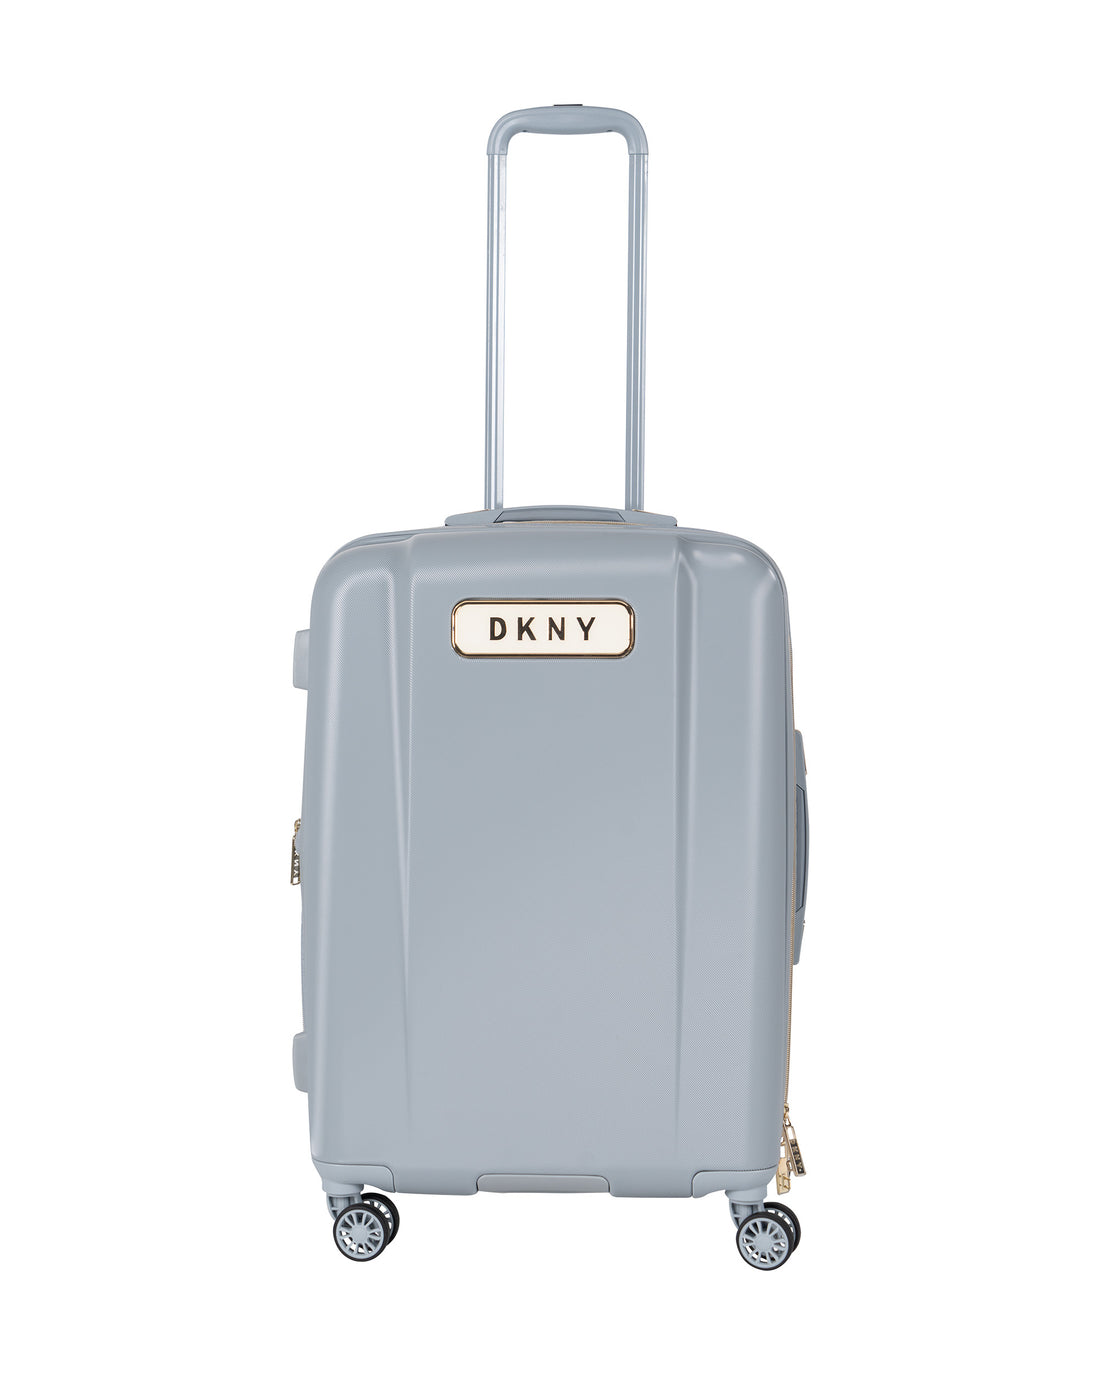 DKNY - حقيبة سفر متوسطة الحجم باللون الرمادي